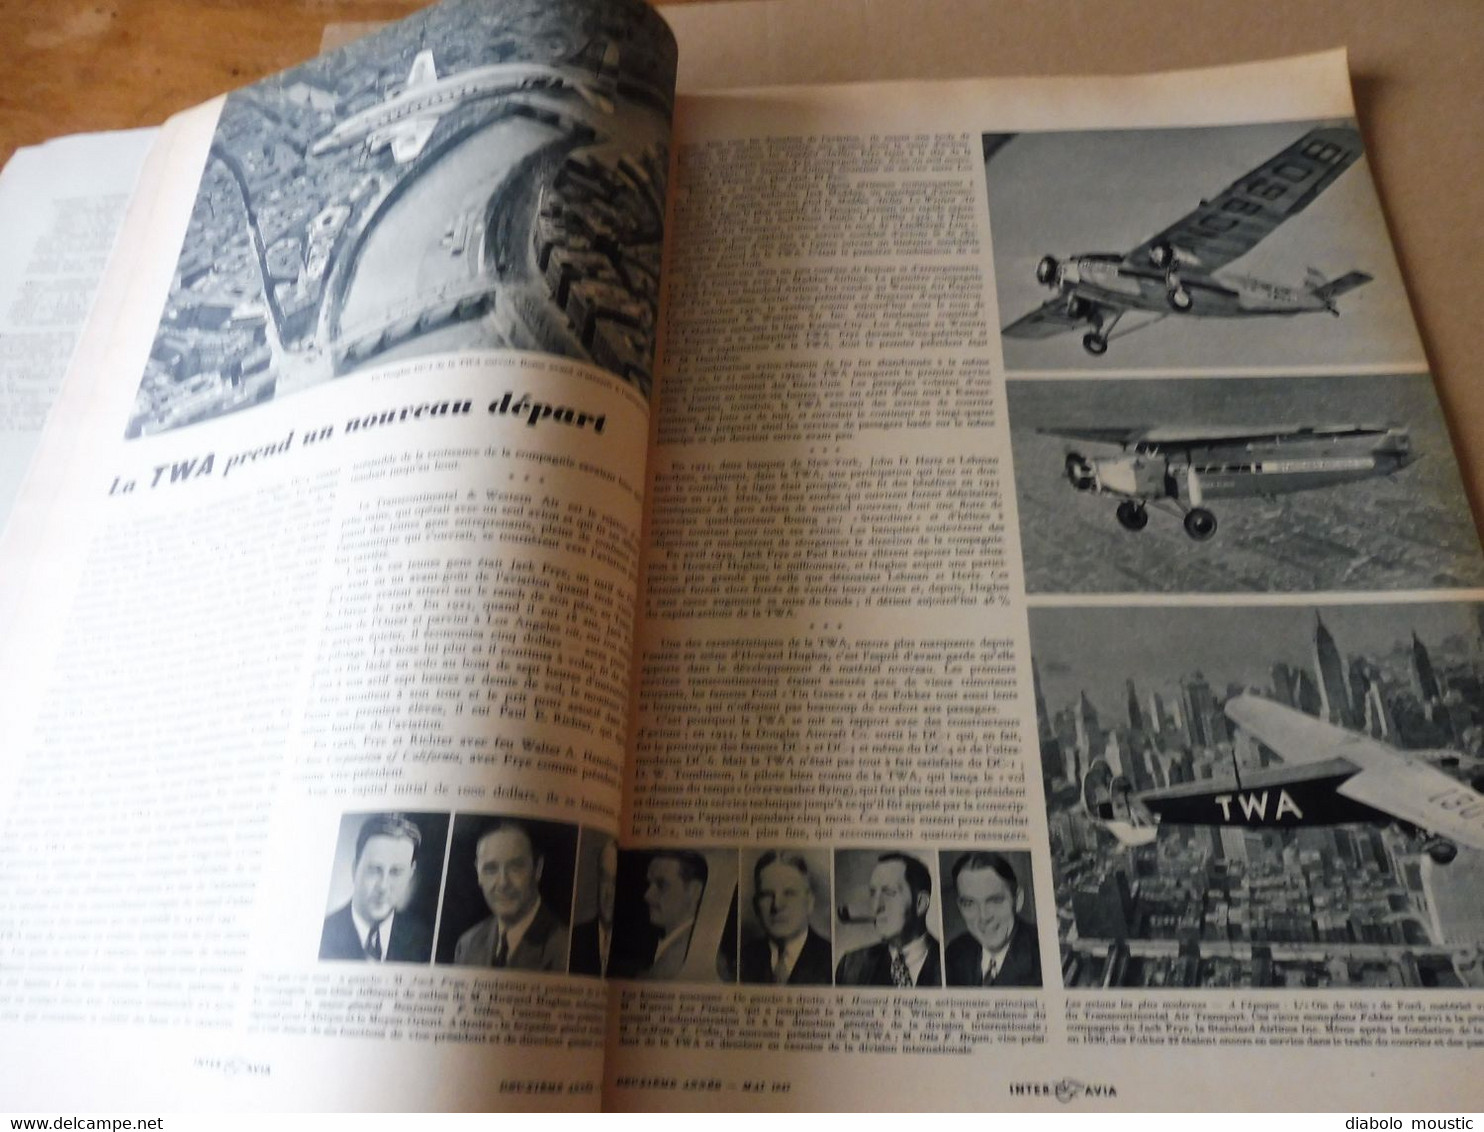 1947 INTER AVIA  ( Interavia )  - Revue de l'Aéronautique Mondiale : Développement de la V2, Ravitaillement en vol; etc